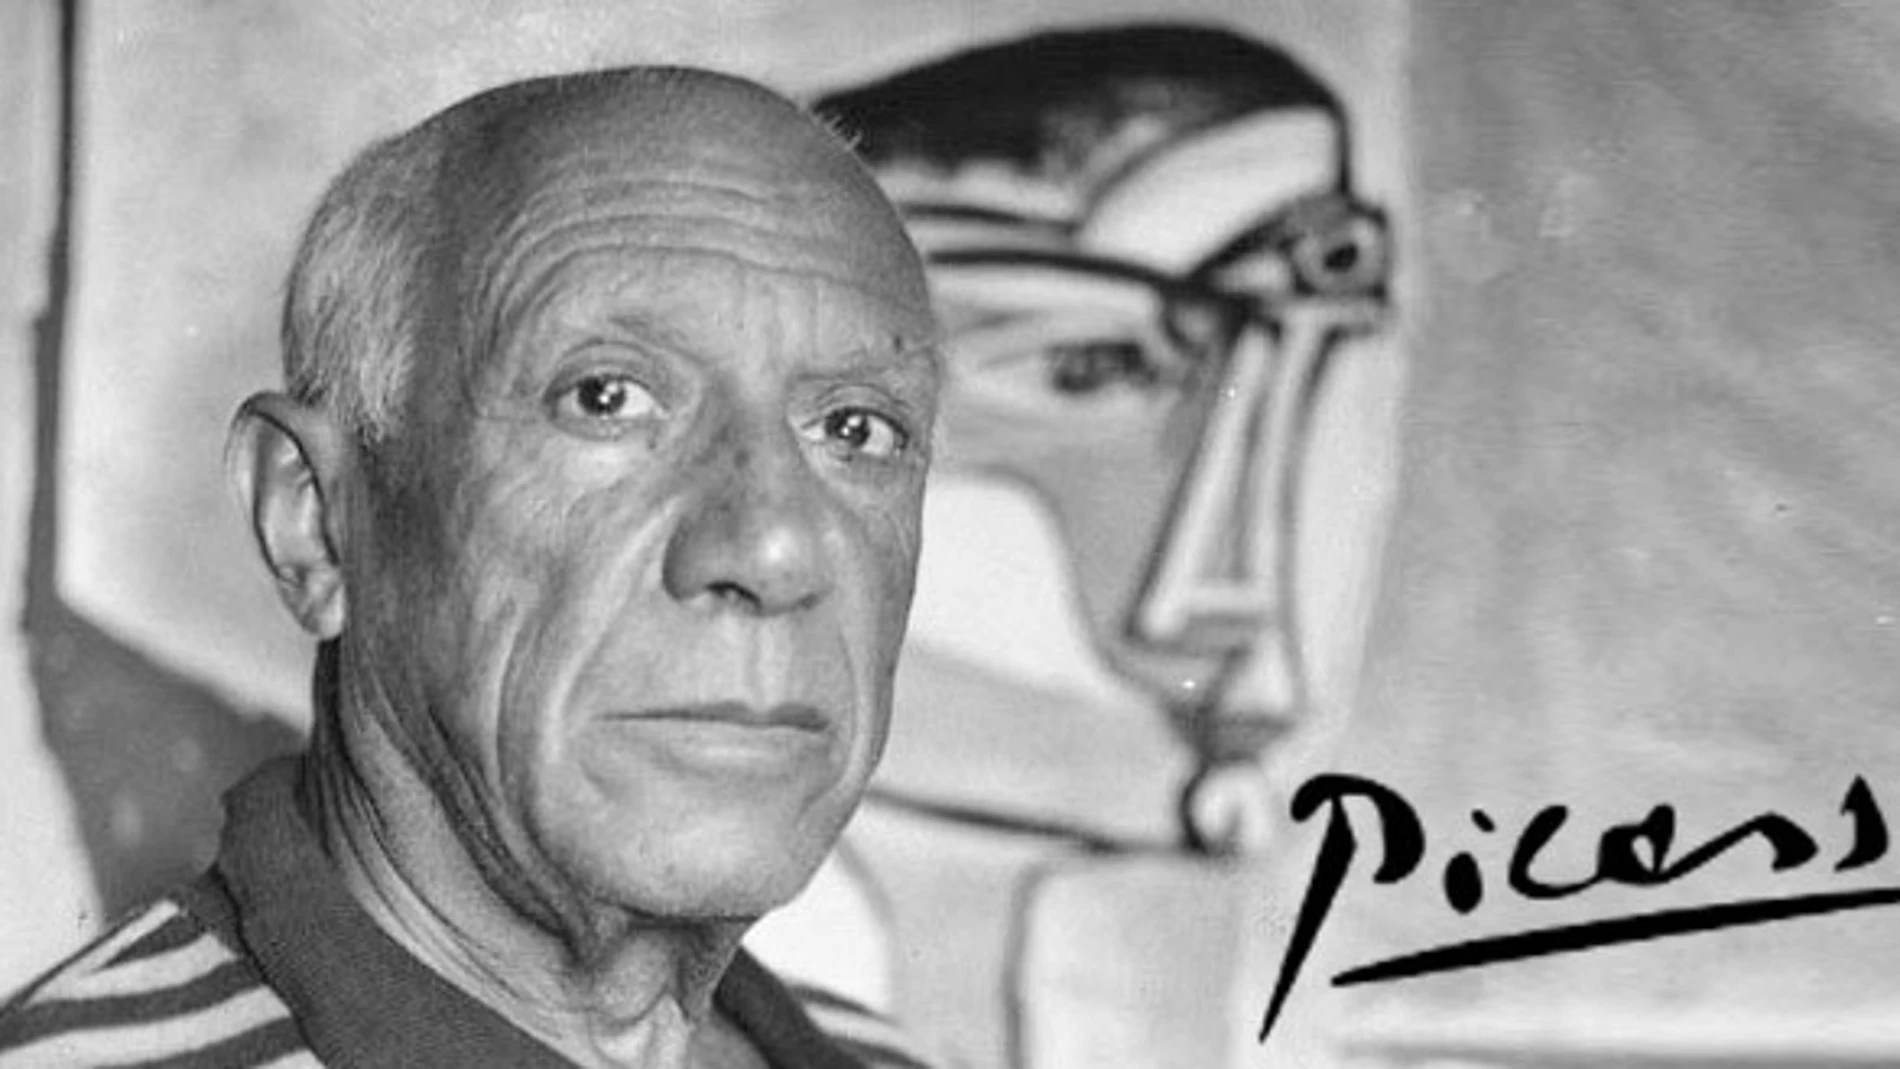 Picasso era un genio